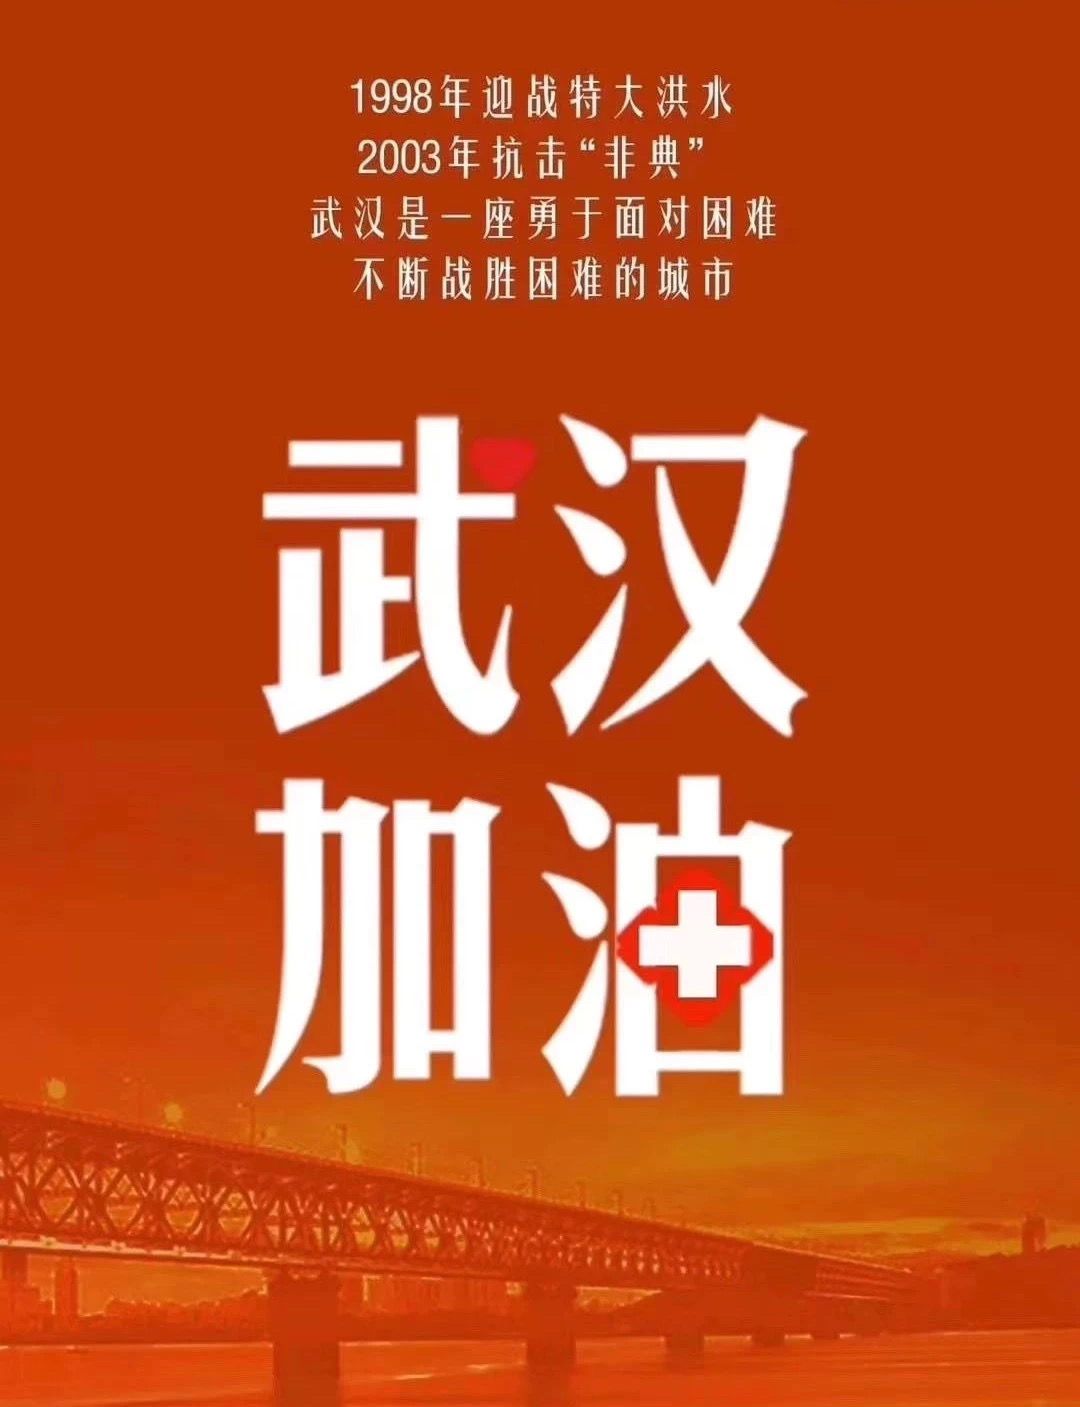 华谊兄弟公益基金向武汉市捐赠100万元人民币